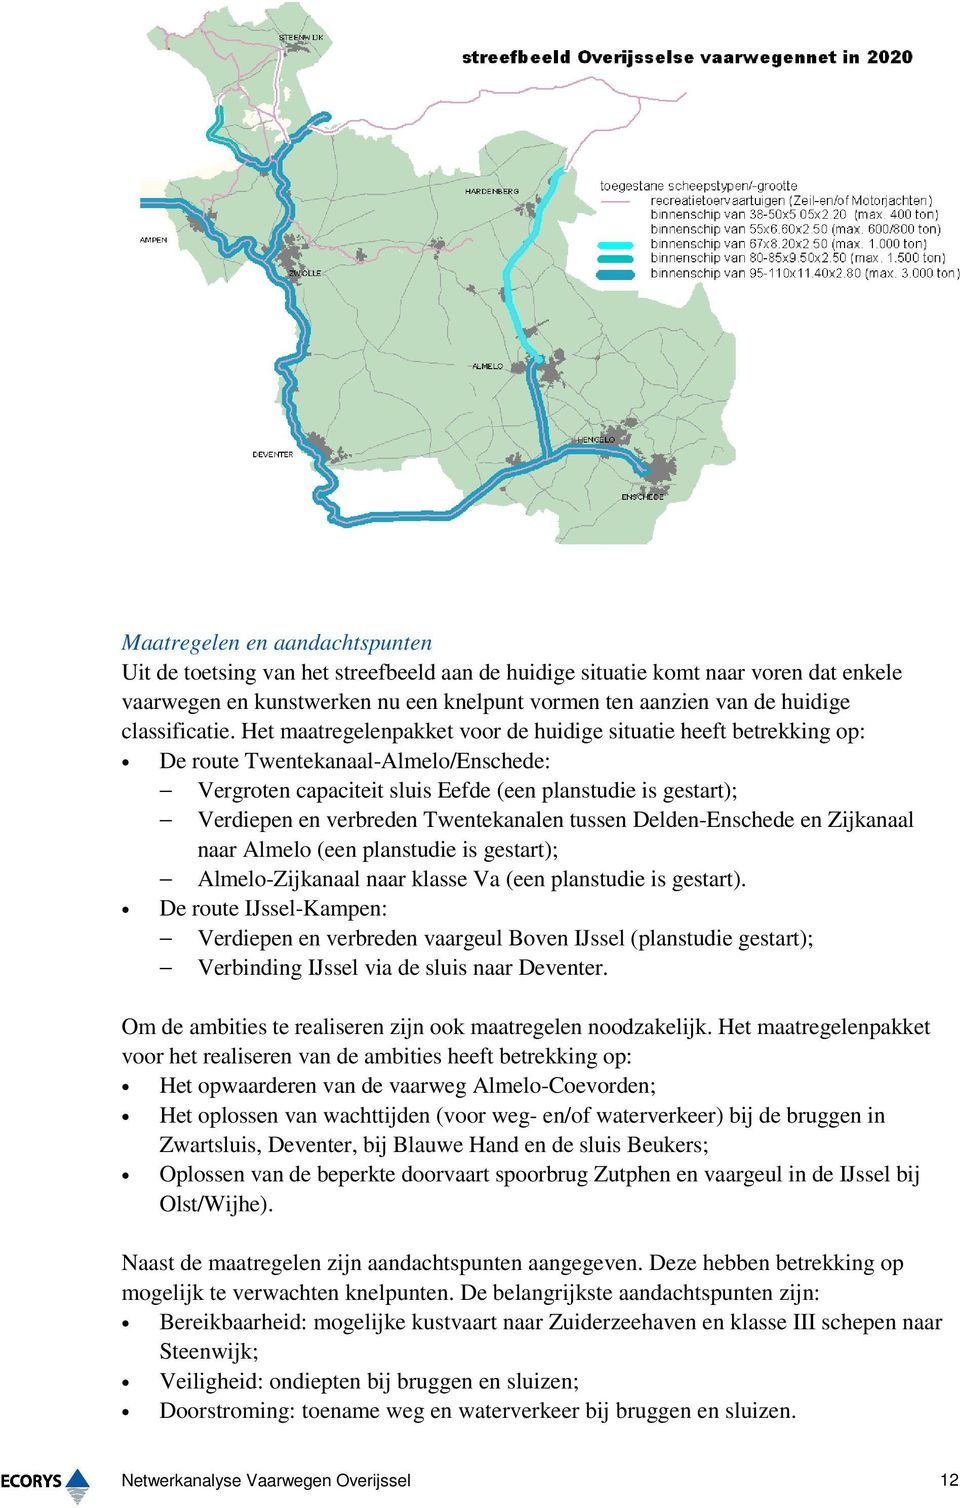 Het maatregelenpakket voor de huidige situatie heeft betrekking op: De route Twentekanaal-Almelo/Enschede: Vergroten capaciteit sluis Eefde (een planstudie is gestart); Verdiepen en verbreden